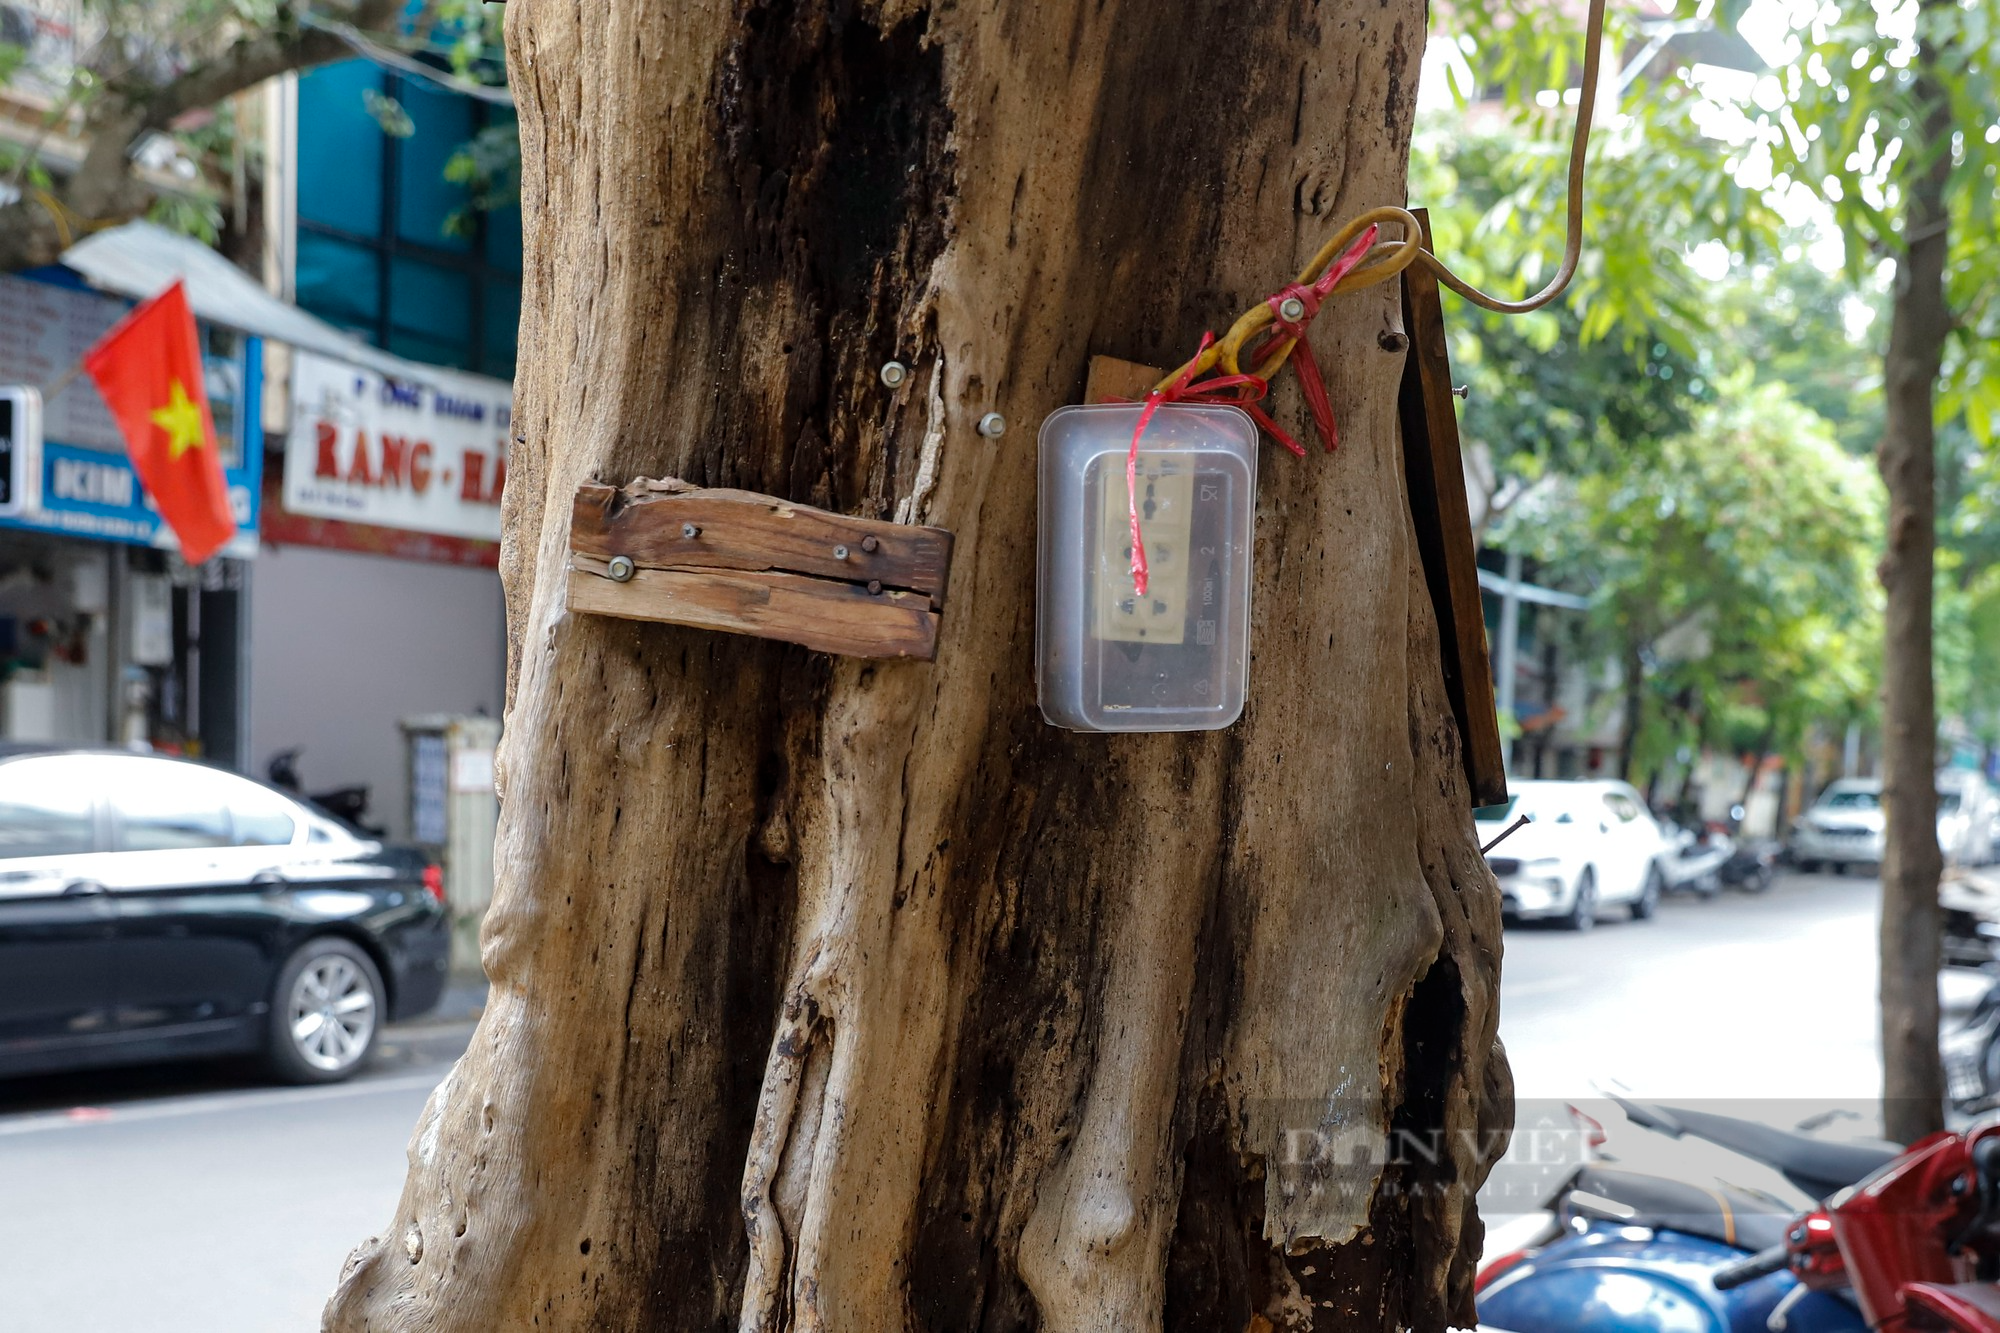 Nhiều cây cổ thụ chết khô trên các tuyến phố Hà Nội, nguy cơ đổ khi giông bão - Ảnh 6.